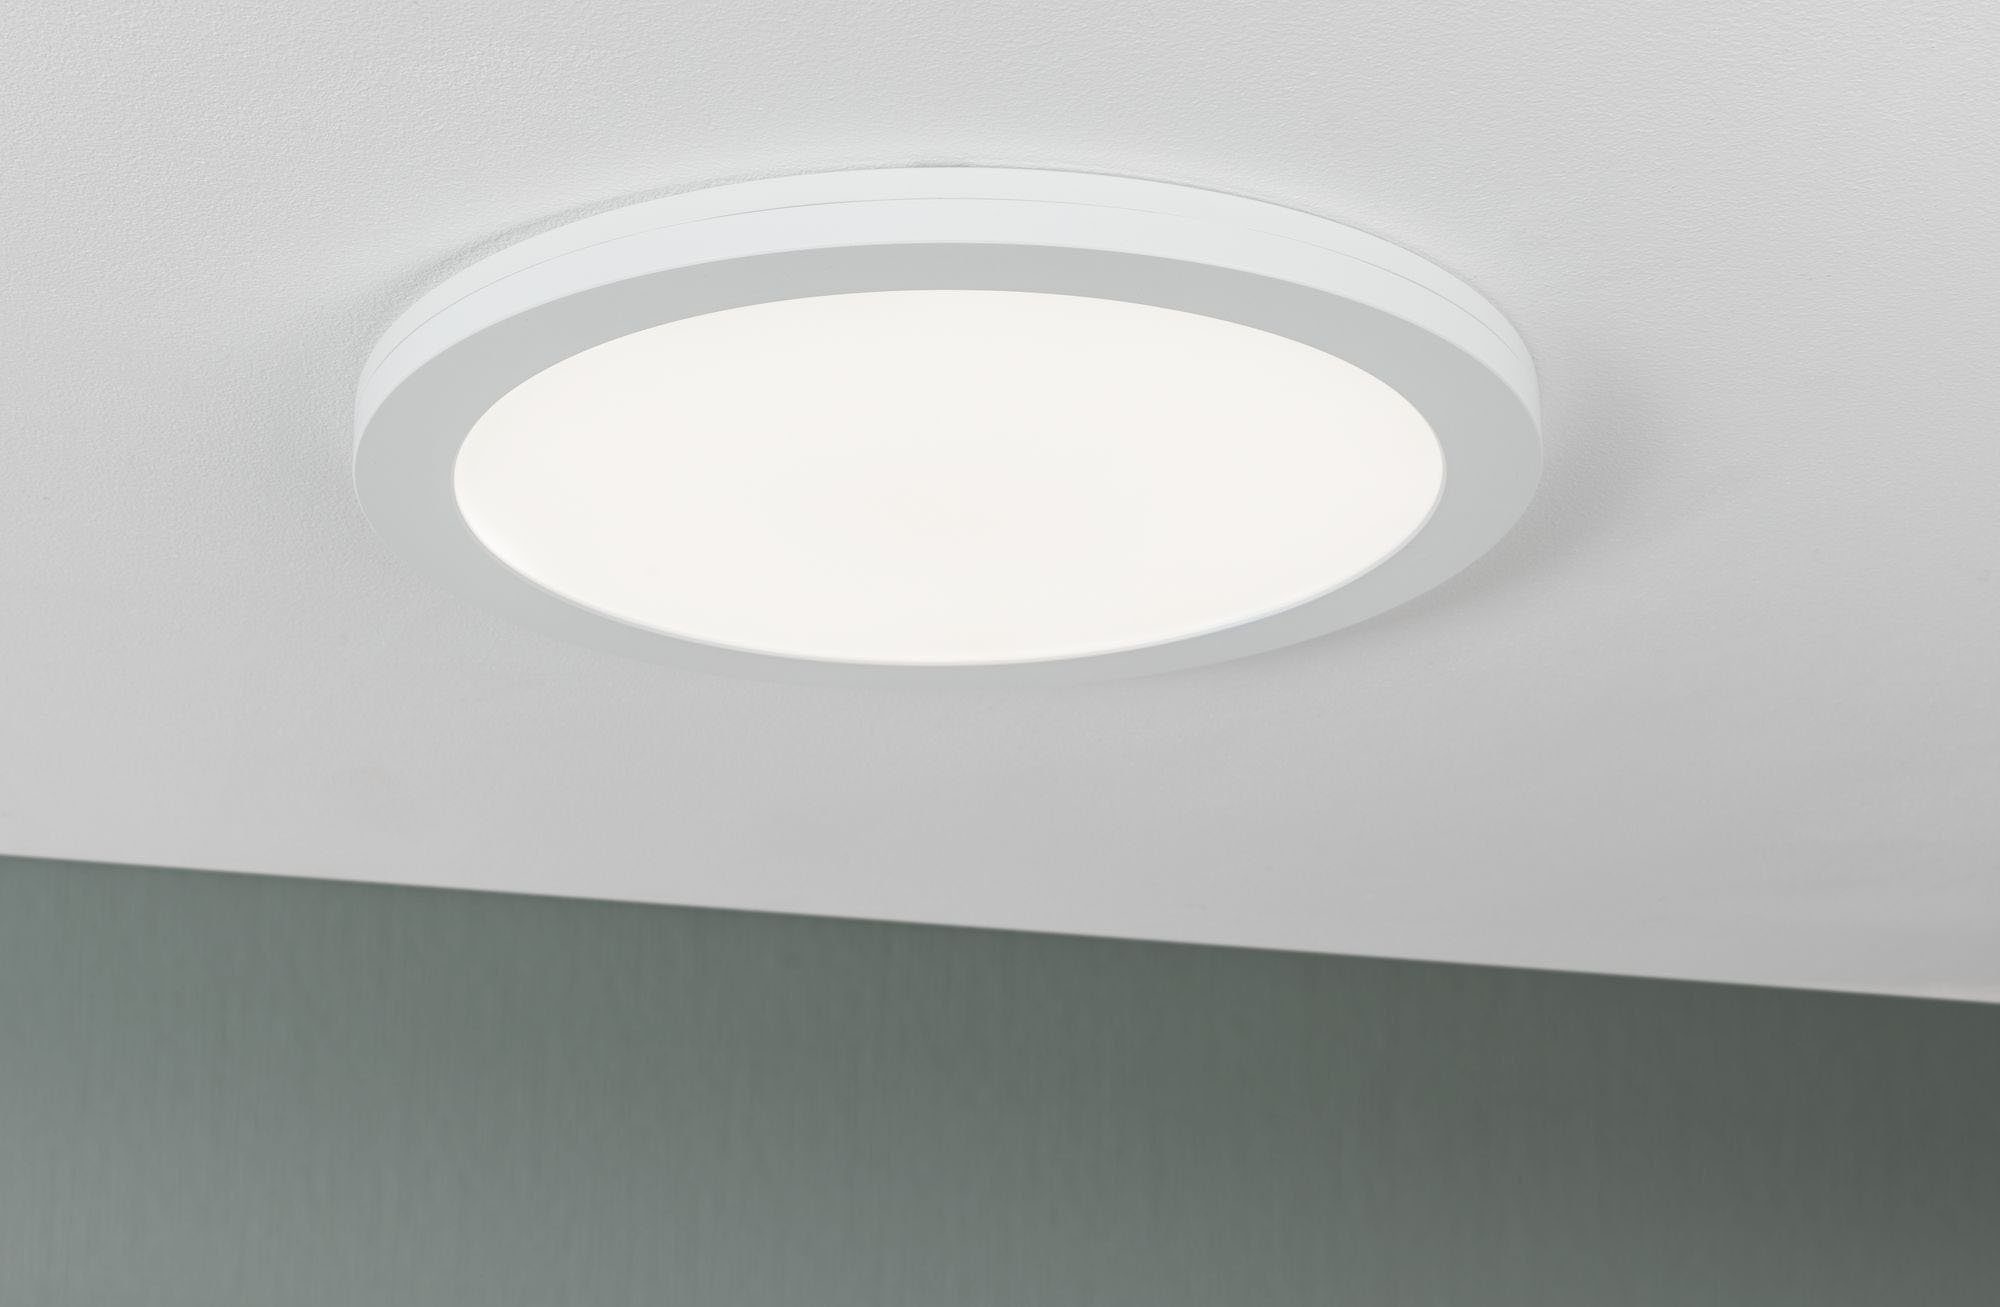 Paulmann LED Einbauleuchte Cover-it, LED fest integriert, Neutralweiß, LED-Modul,  Einbau-Deckenlicht mit besonders flacher Bauweise